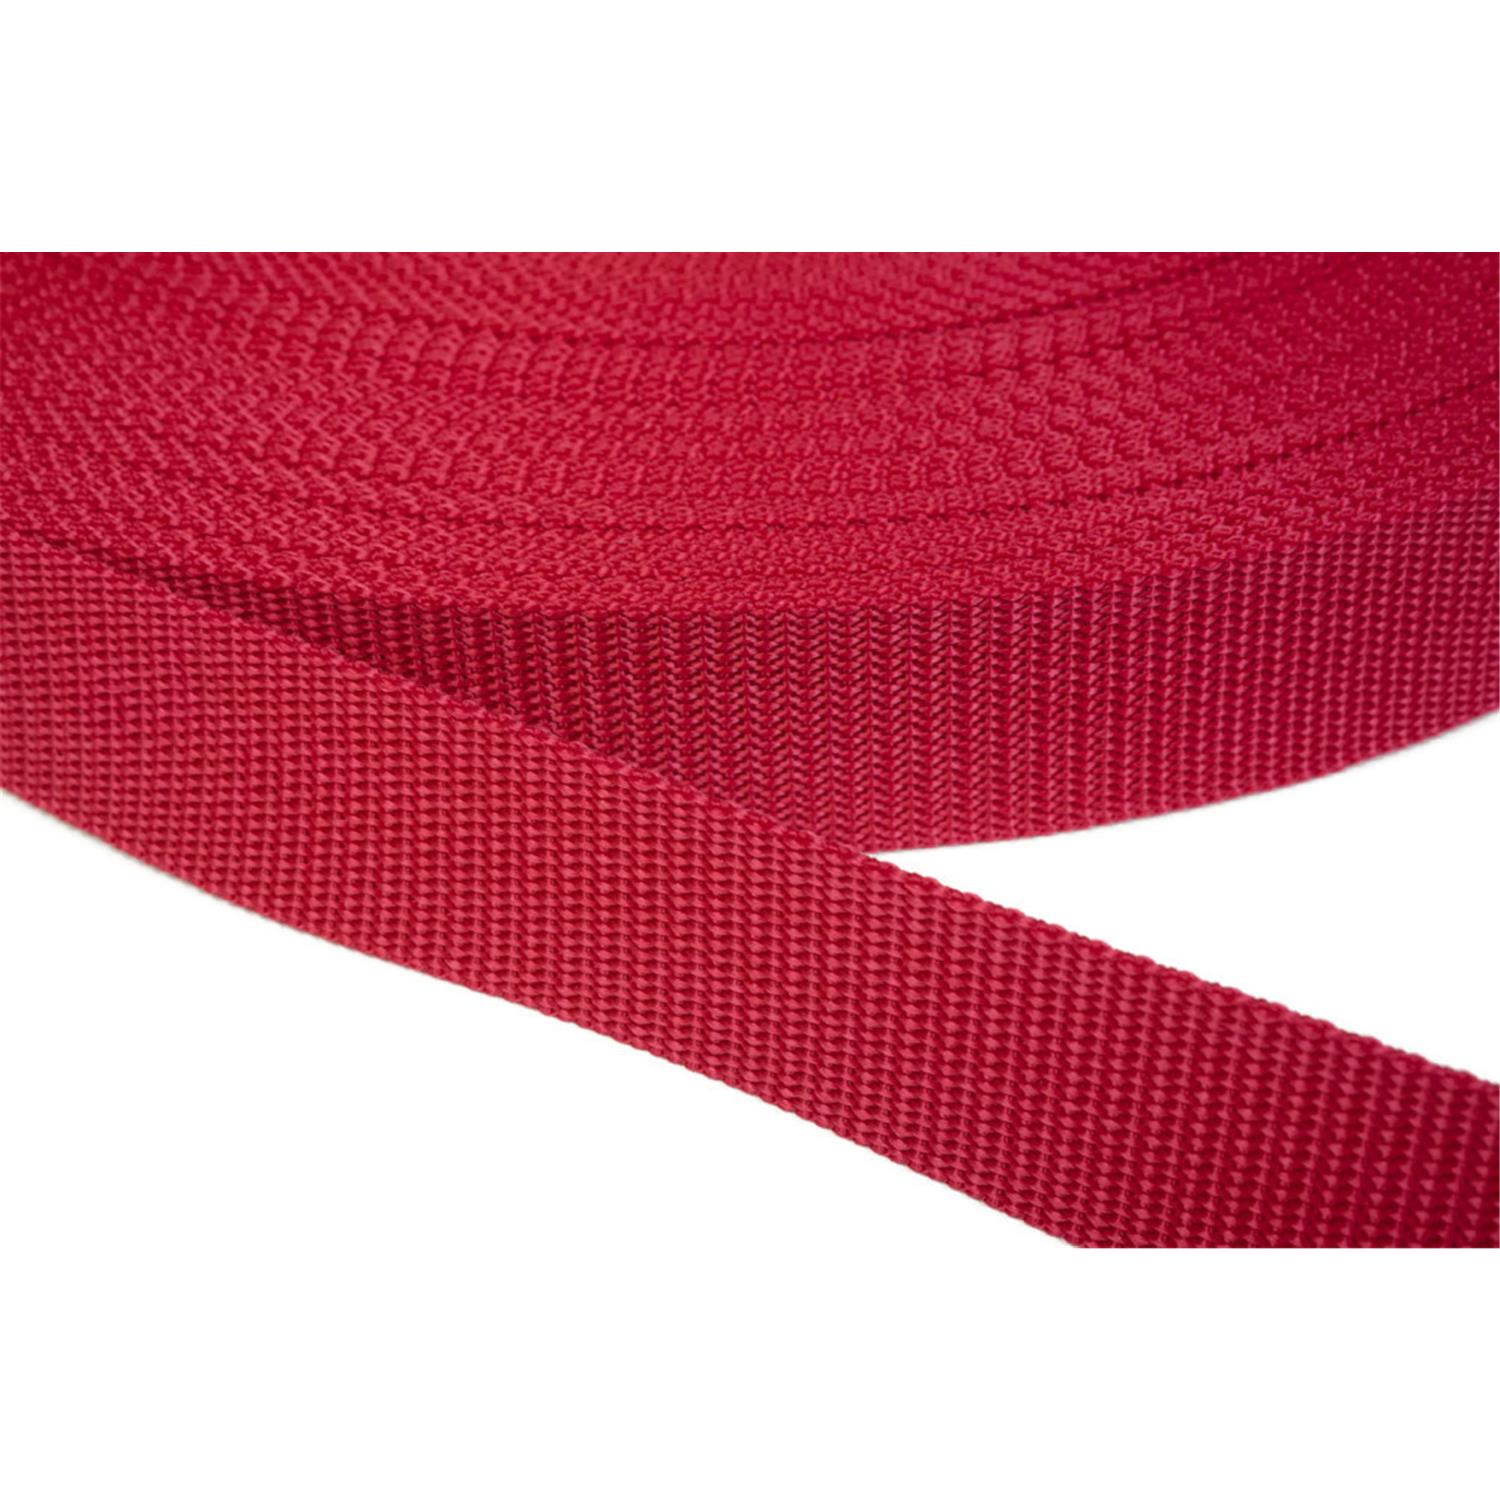 Gurtband 25mm breit aus Polypropylen in 41 Farben 19 - rot 12 Meter